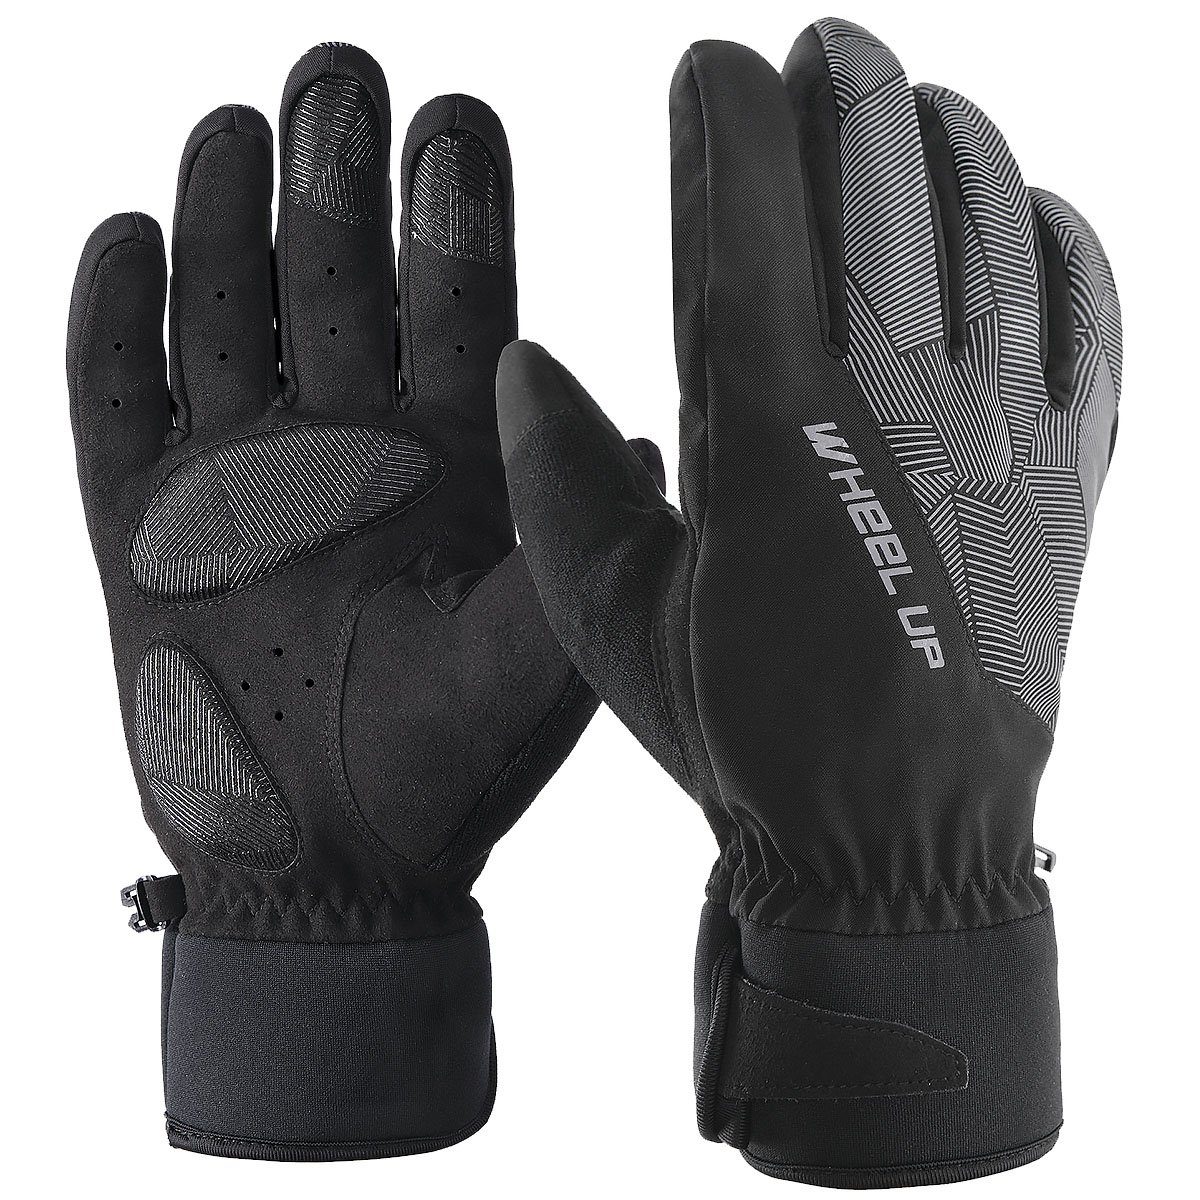 MidGard Funktion Touchscreen mit Fahrrad-Handschuhe winddicht Winterhandschuhe Skihandschuhe